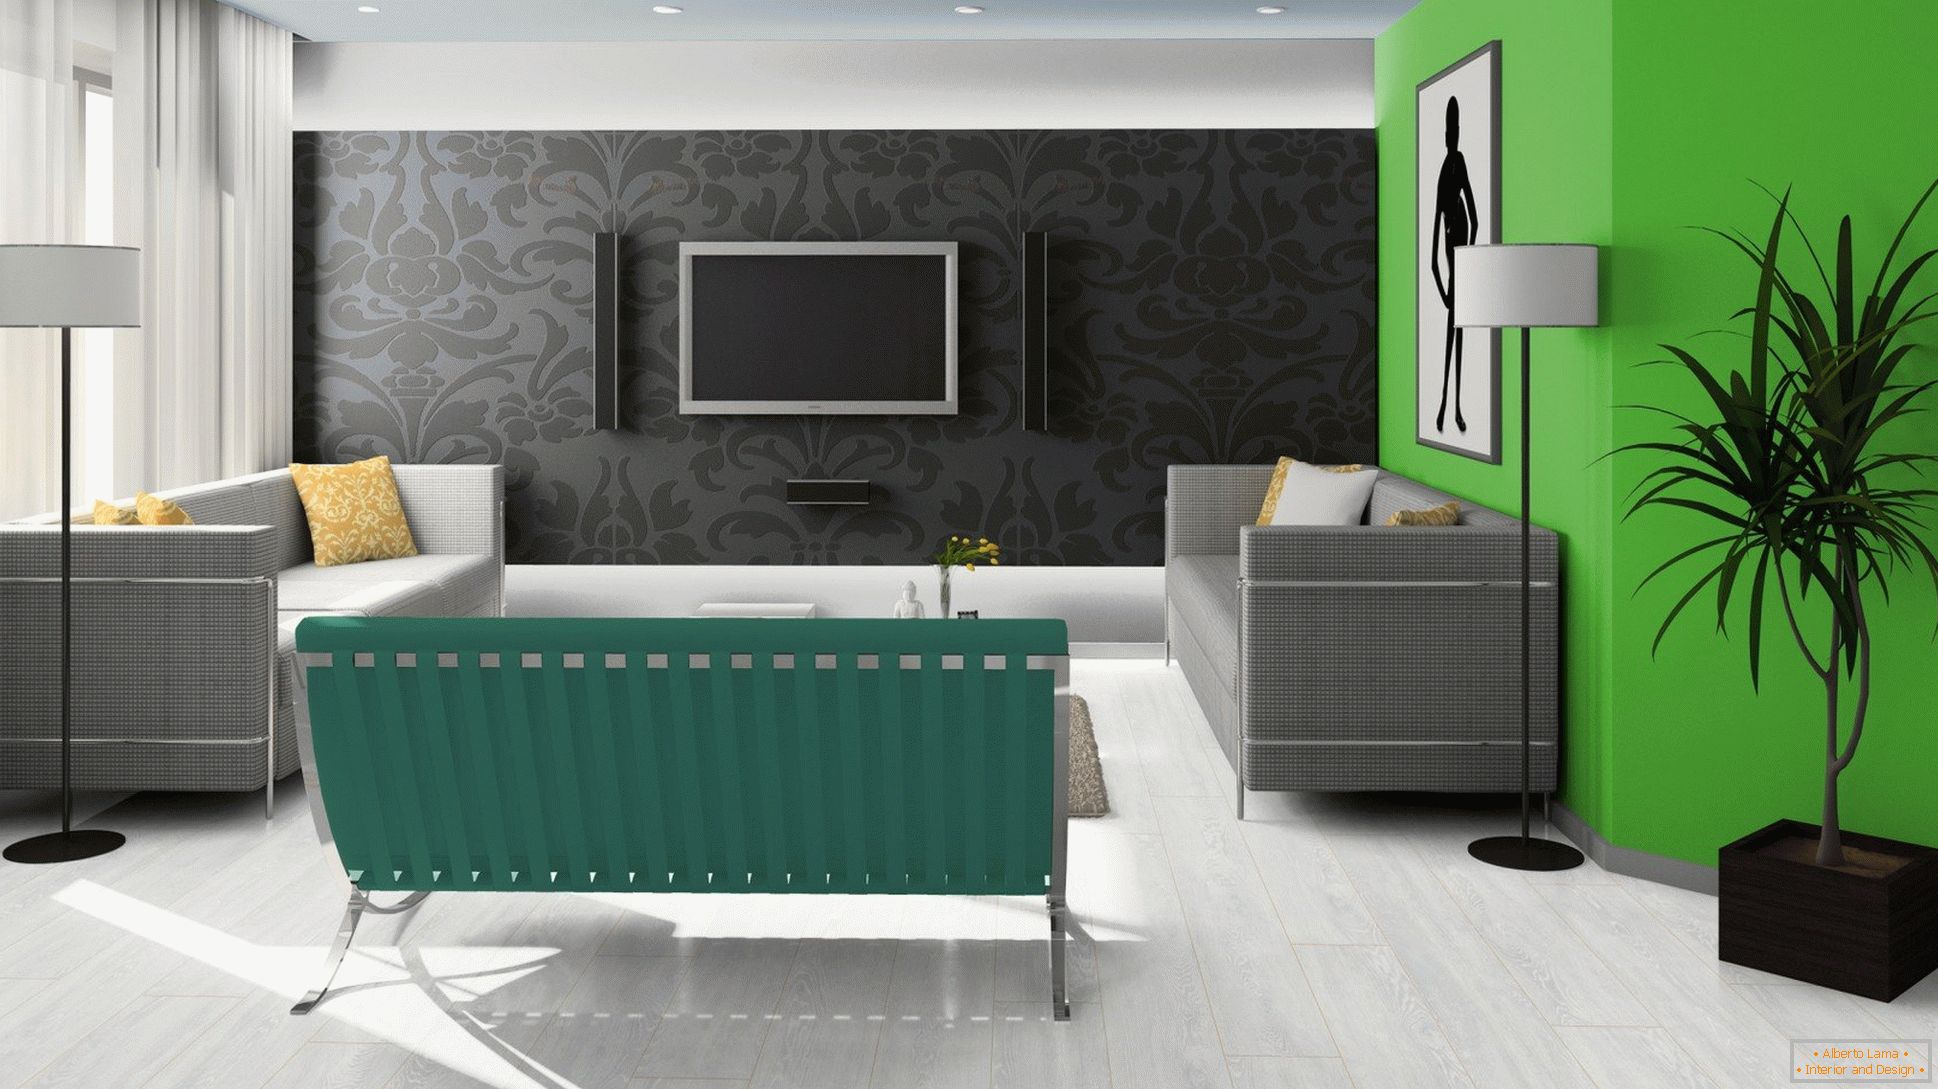 Preto, verde e branco no design da sala de estar